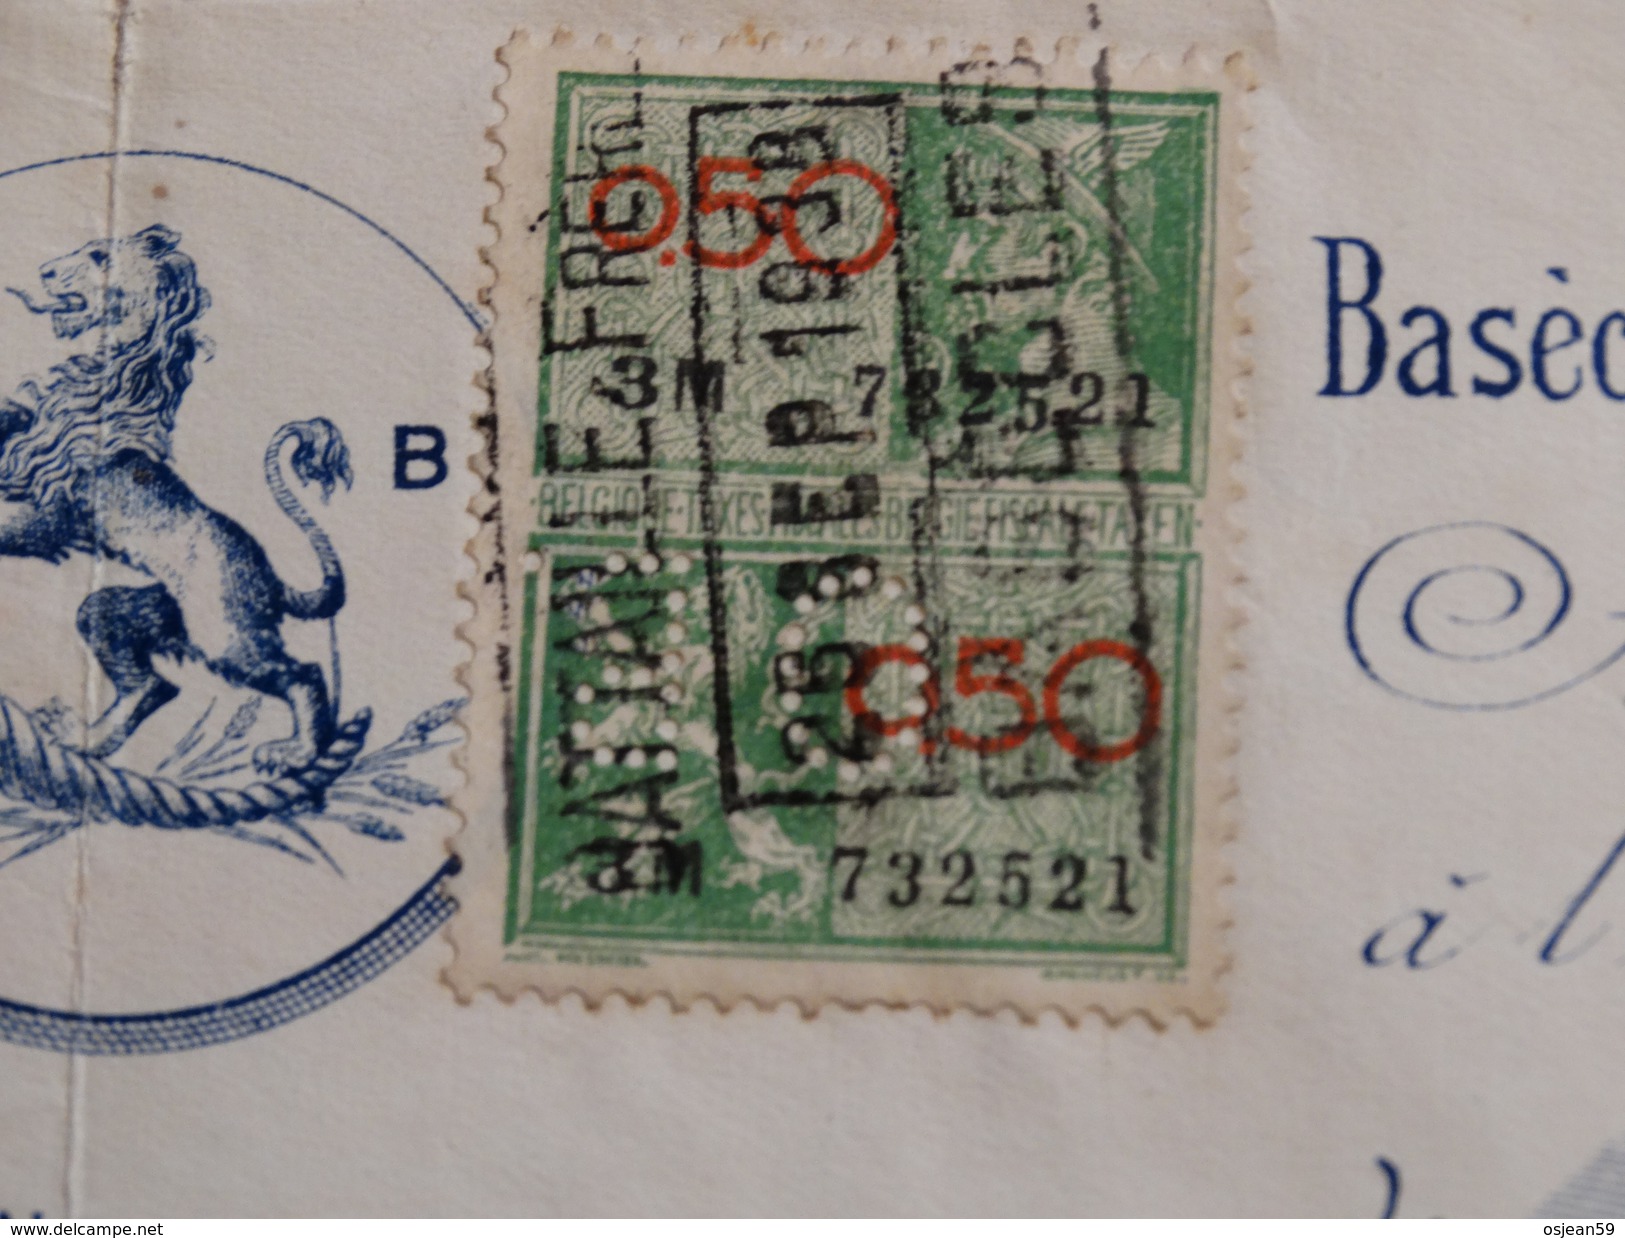 Timbre Fiscal Pérforé Sur Reçu Battaille Frères à Basècles(Belgique).-1938- - Documents